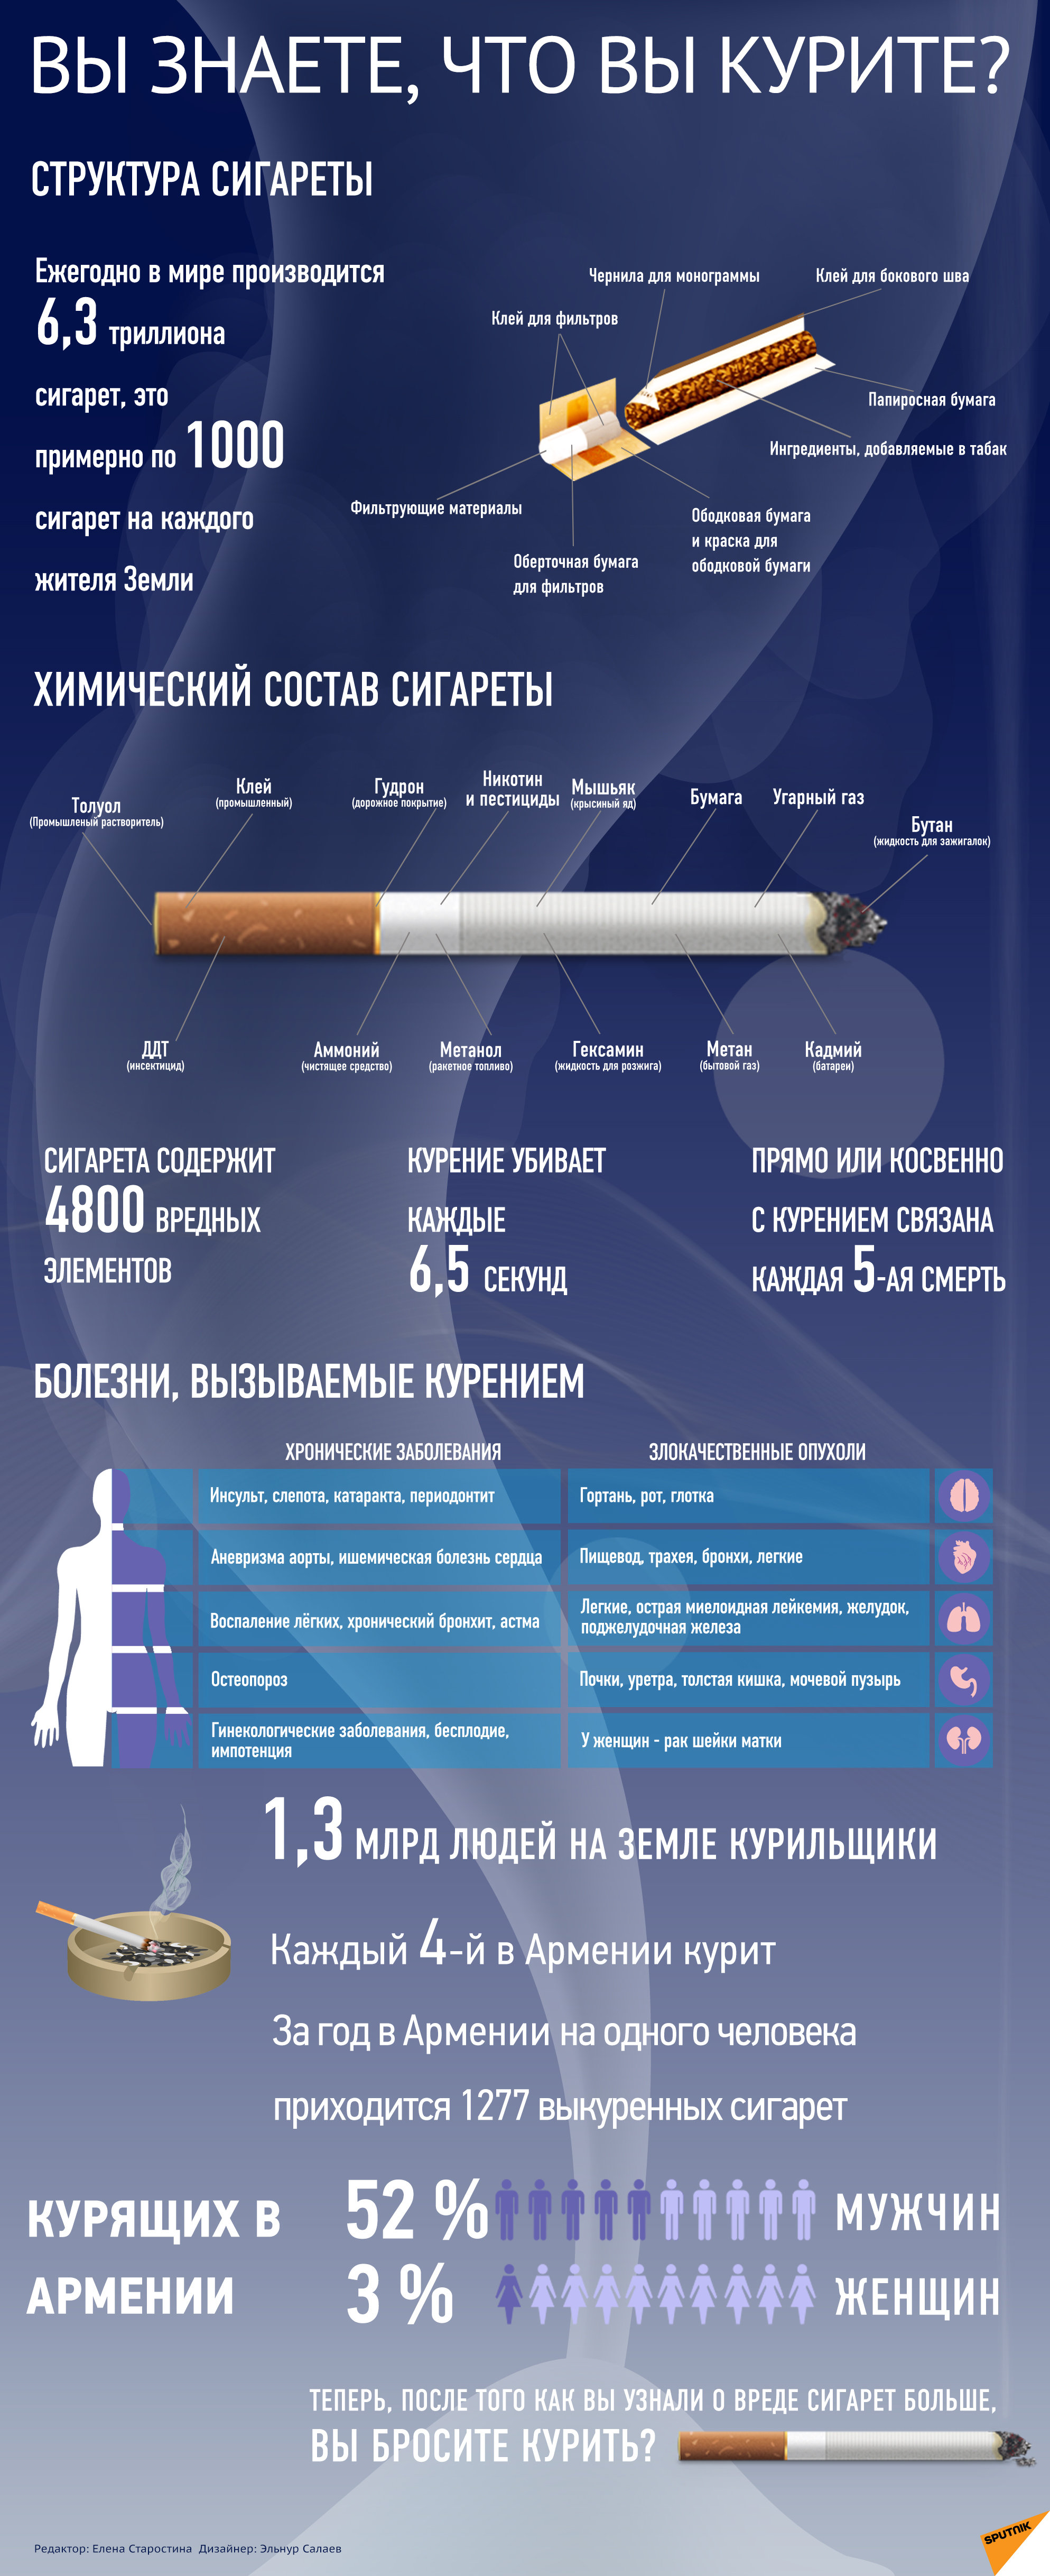 Вы знаете, что вы курите? - Sputnik Армения